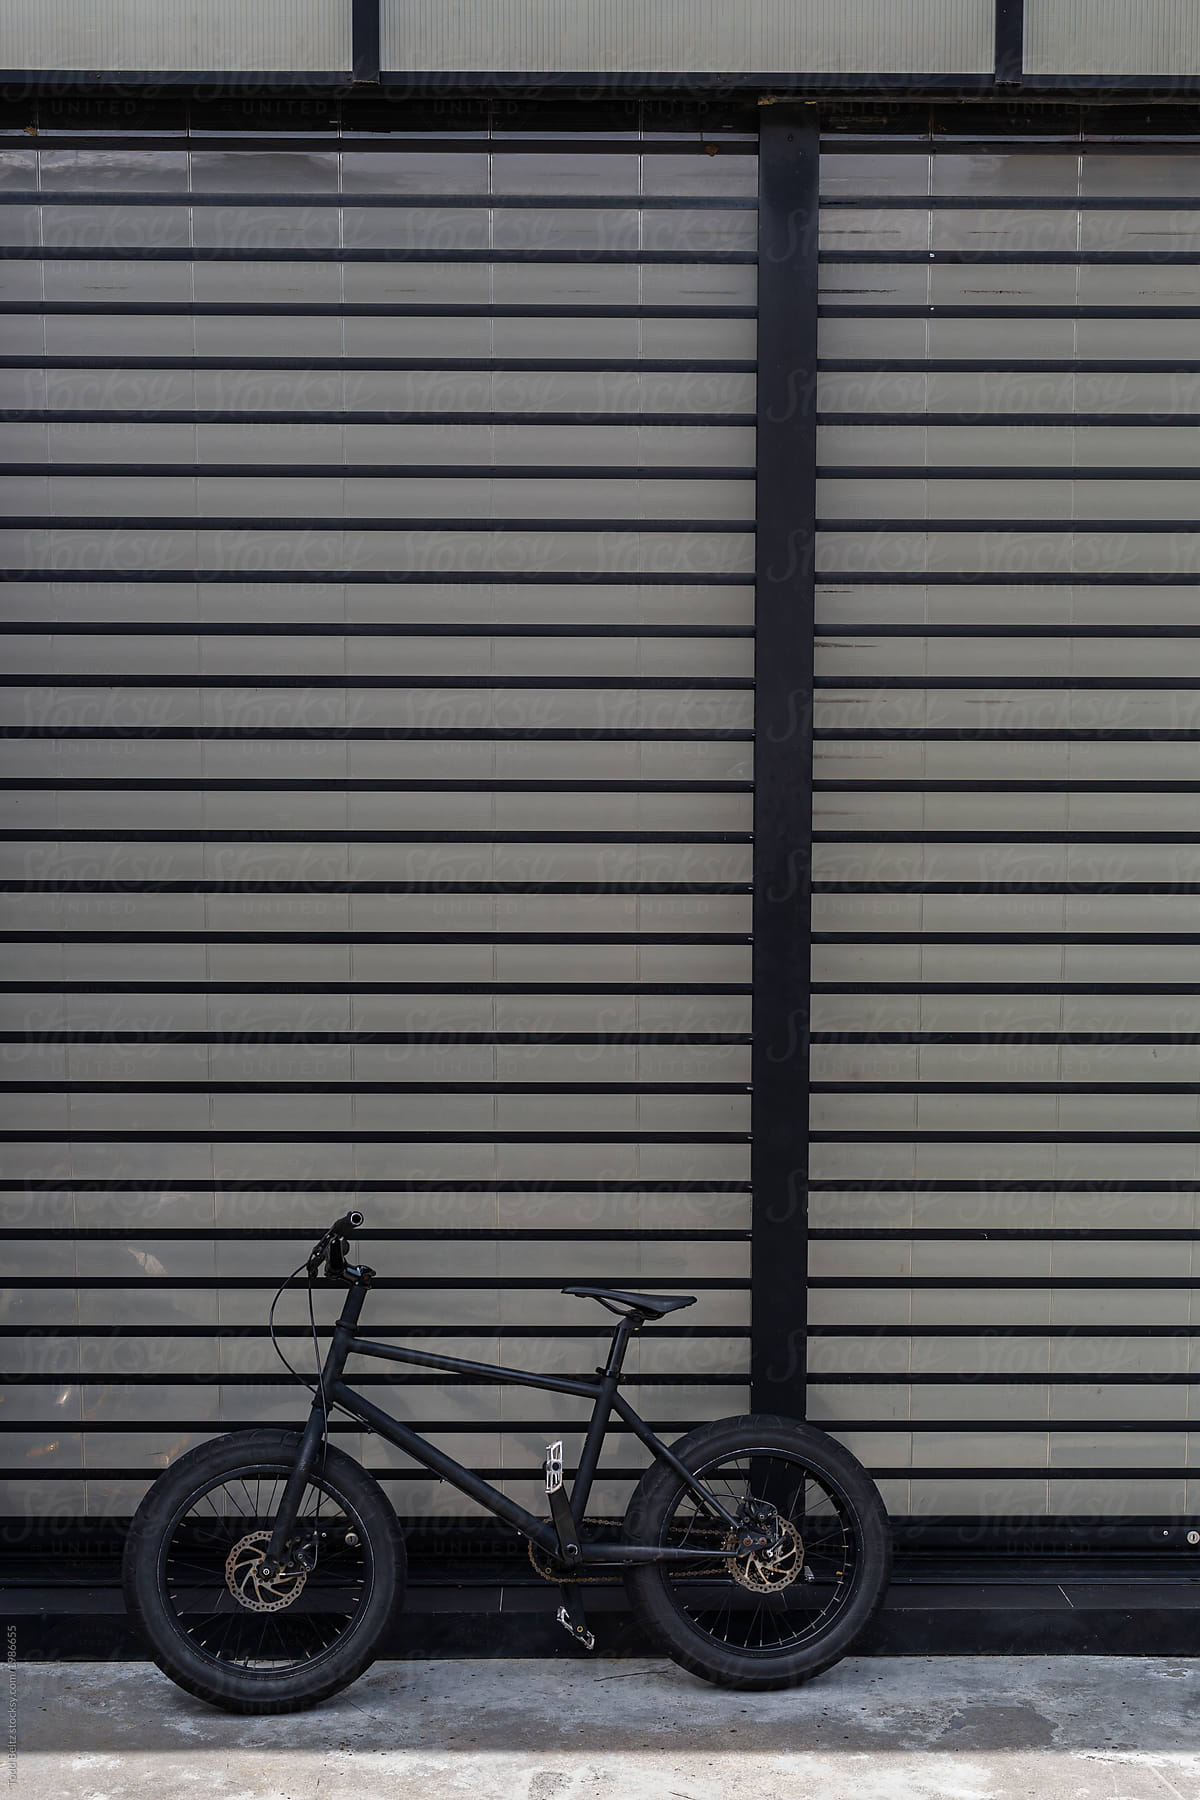 A black bike leans against a black building